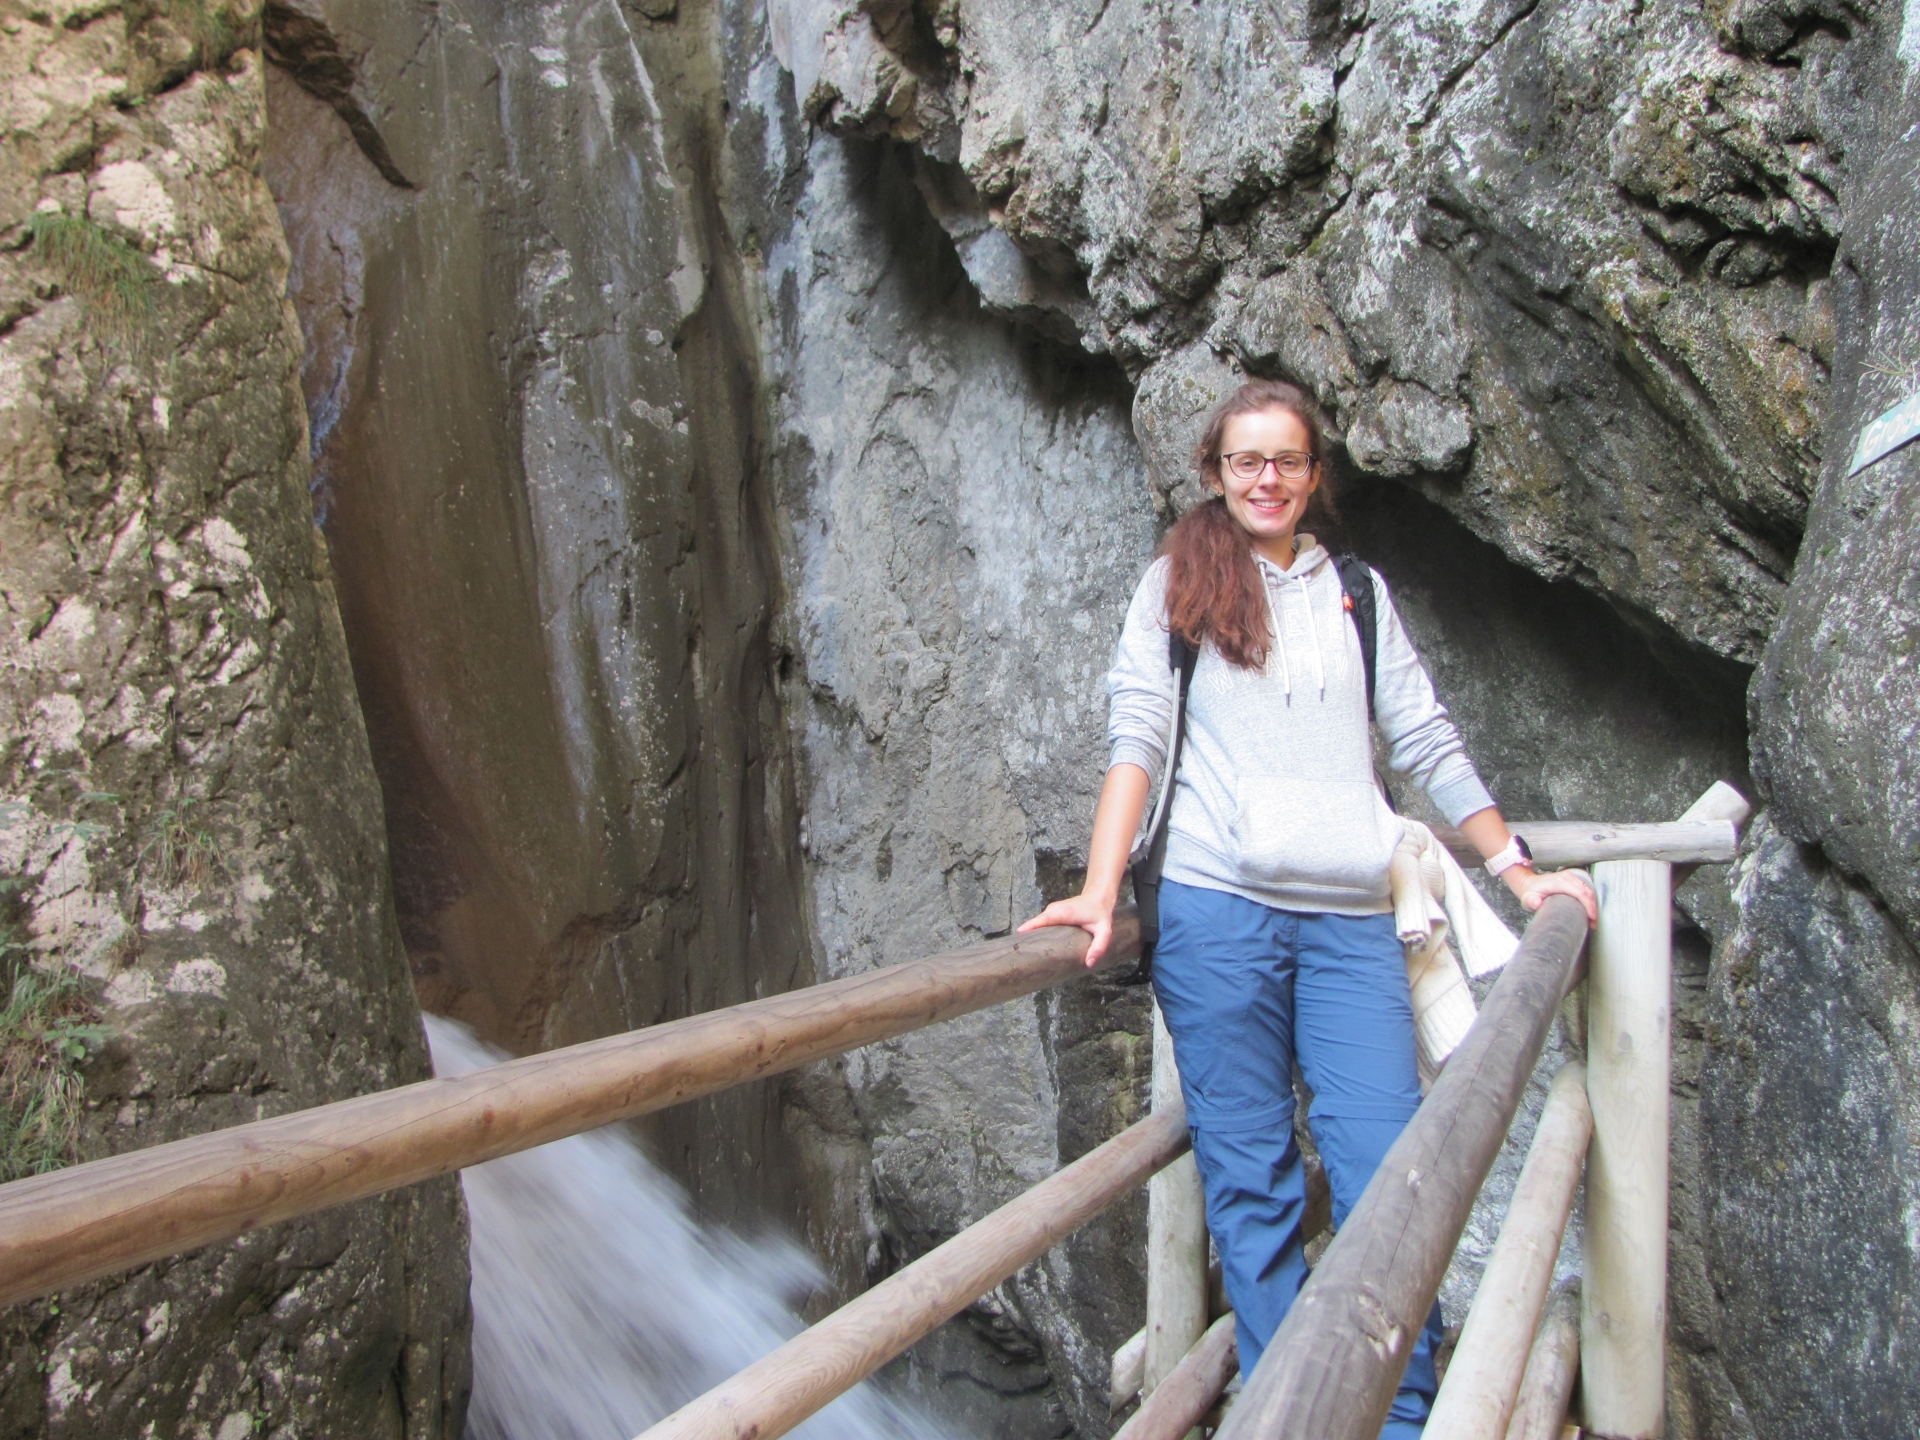 Debora at the big waterfall